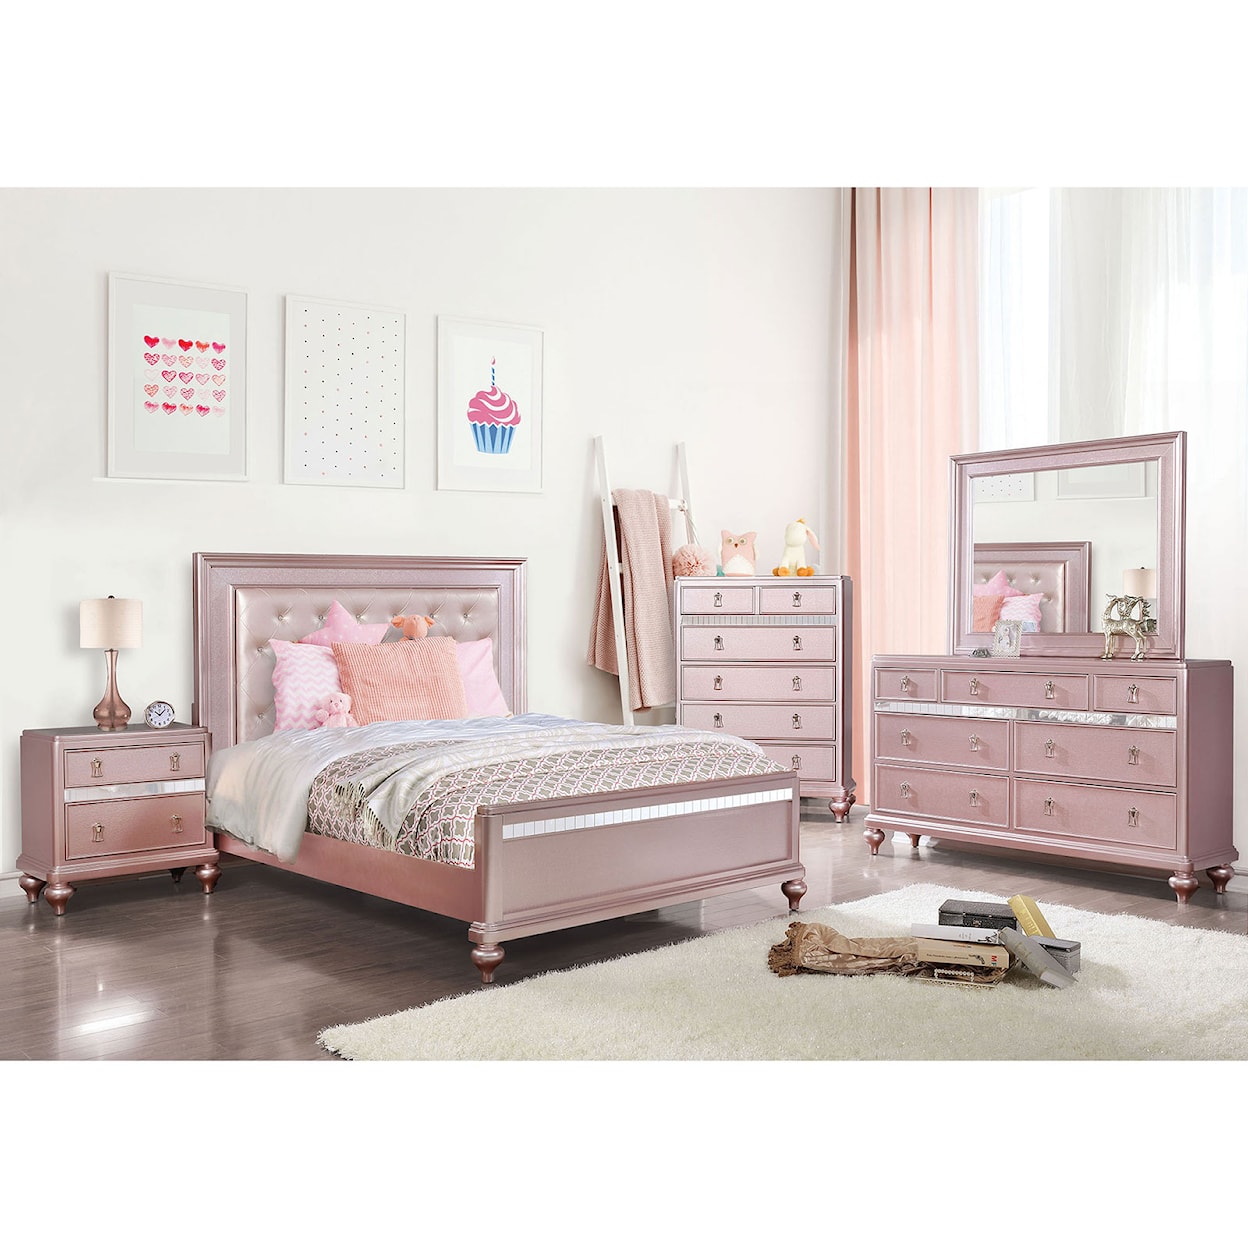 Furniture of America Ariston Queen Bedroom Set